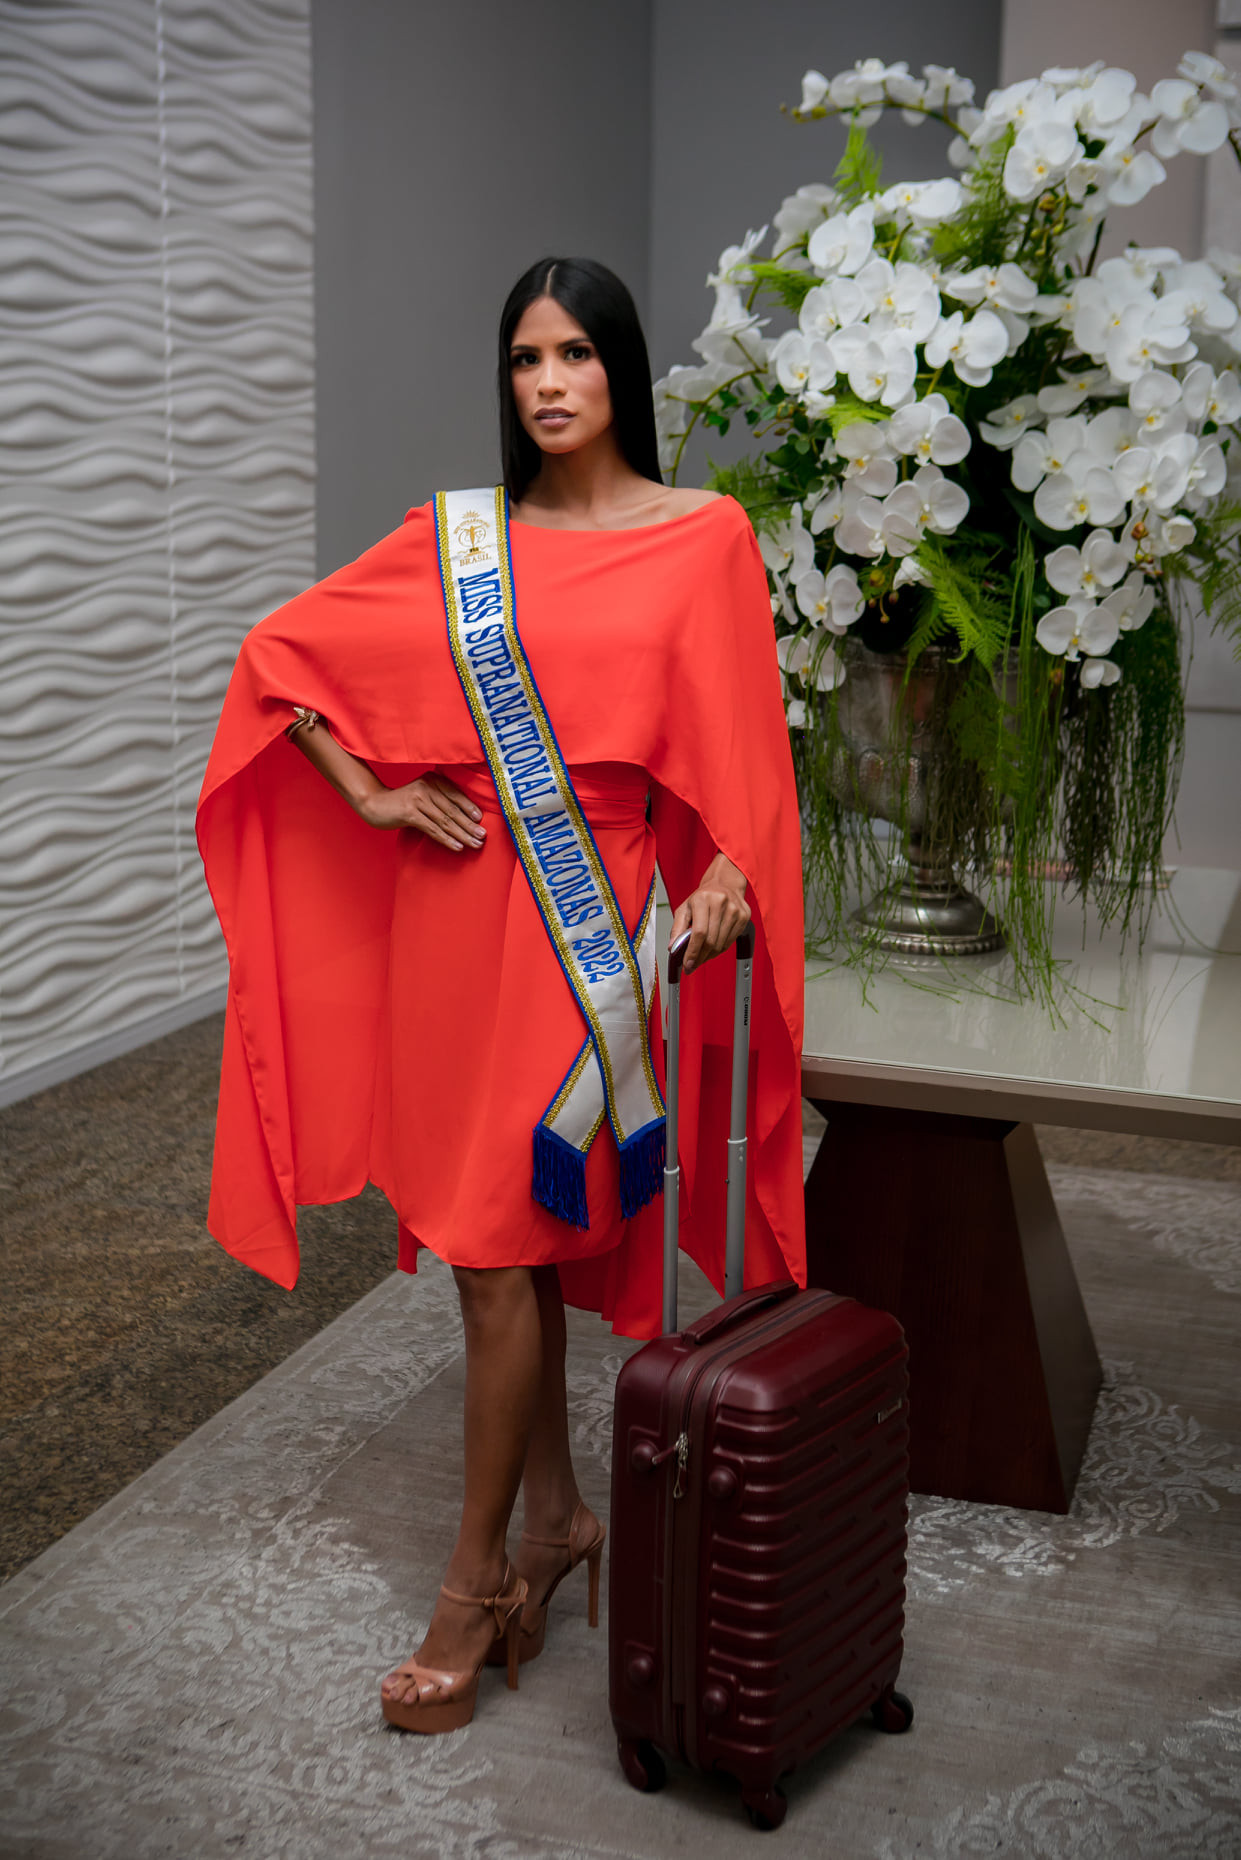 candidatas a miss supranational brazil 2022. (vencedora: miss parana). - Página 10 W5XkS2